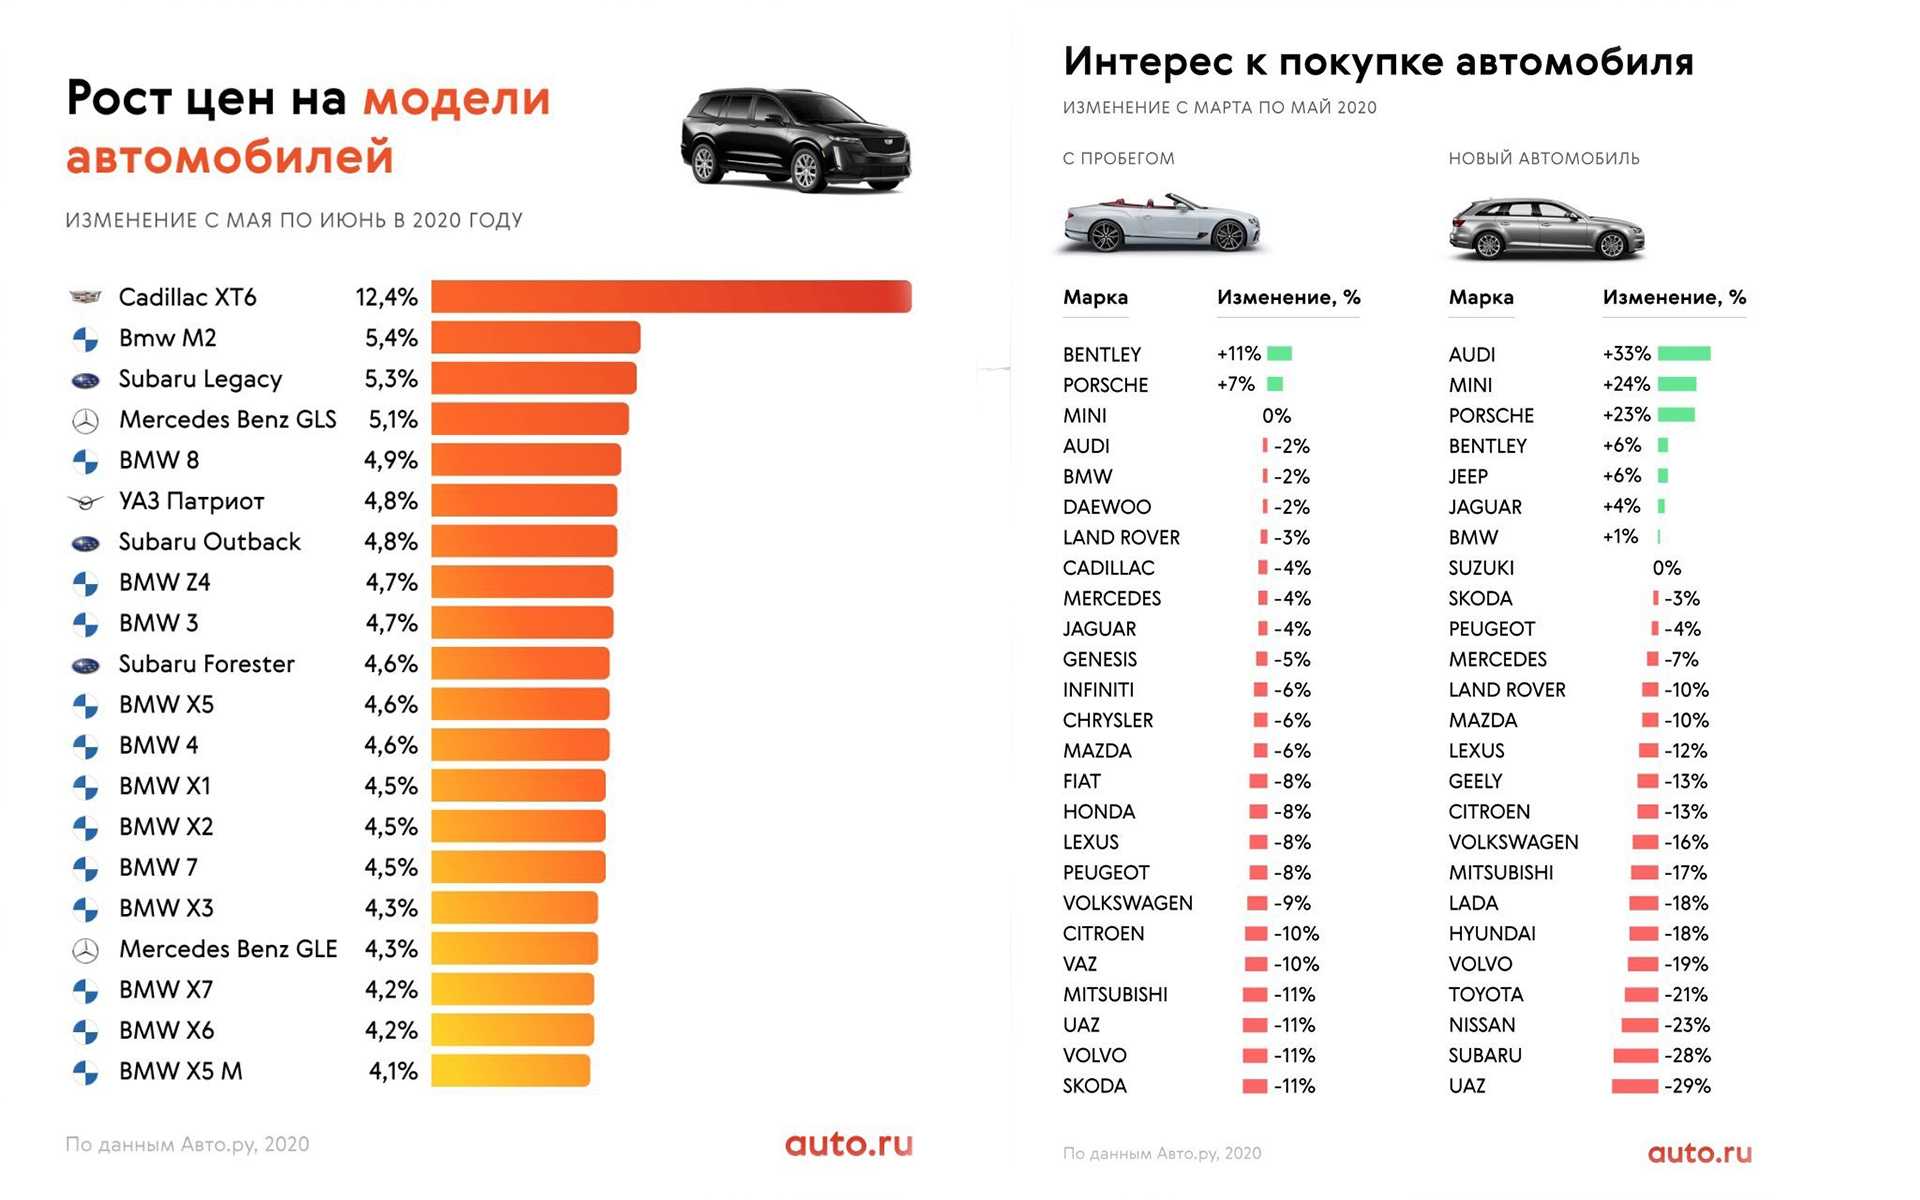 Рейтинг самых надёжных подержанных автомобилей для россии 2022 года